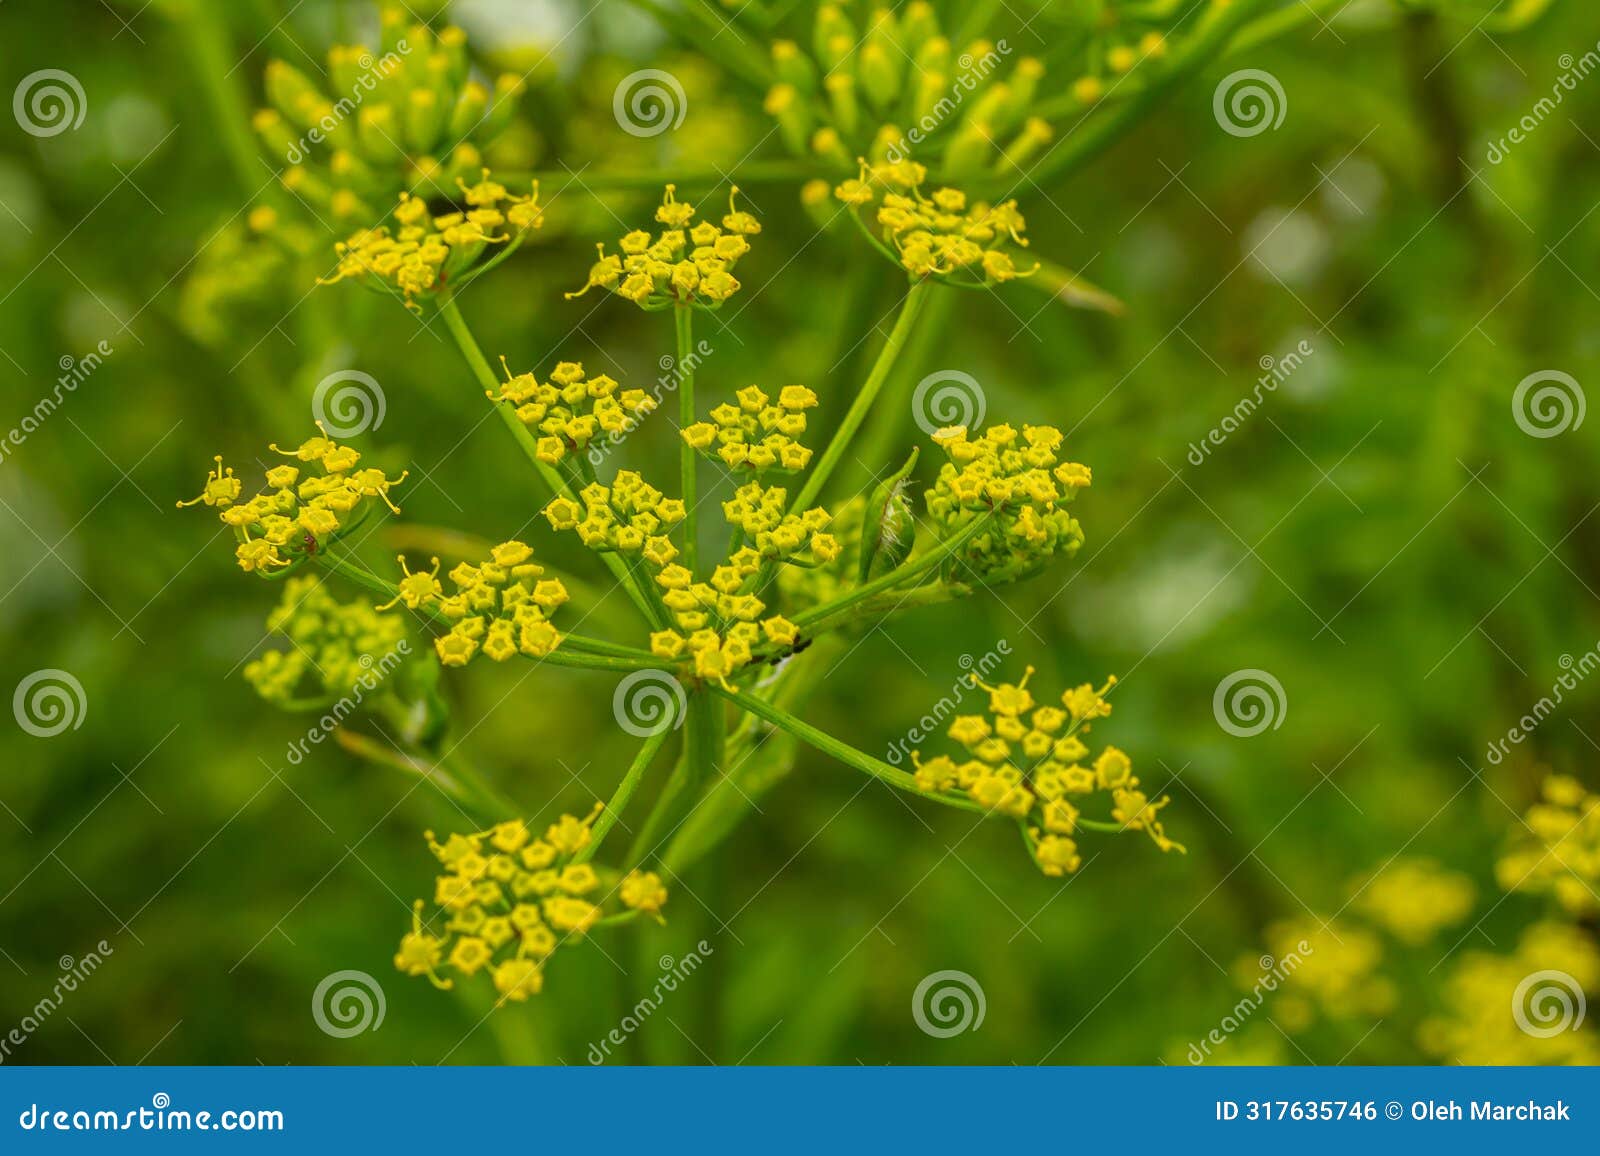 pastinaca sativa subsp. urens, pastinaca umbrosa, apiaceae. wild plant shot in summer